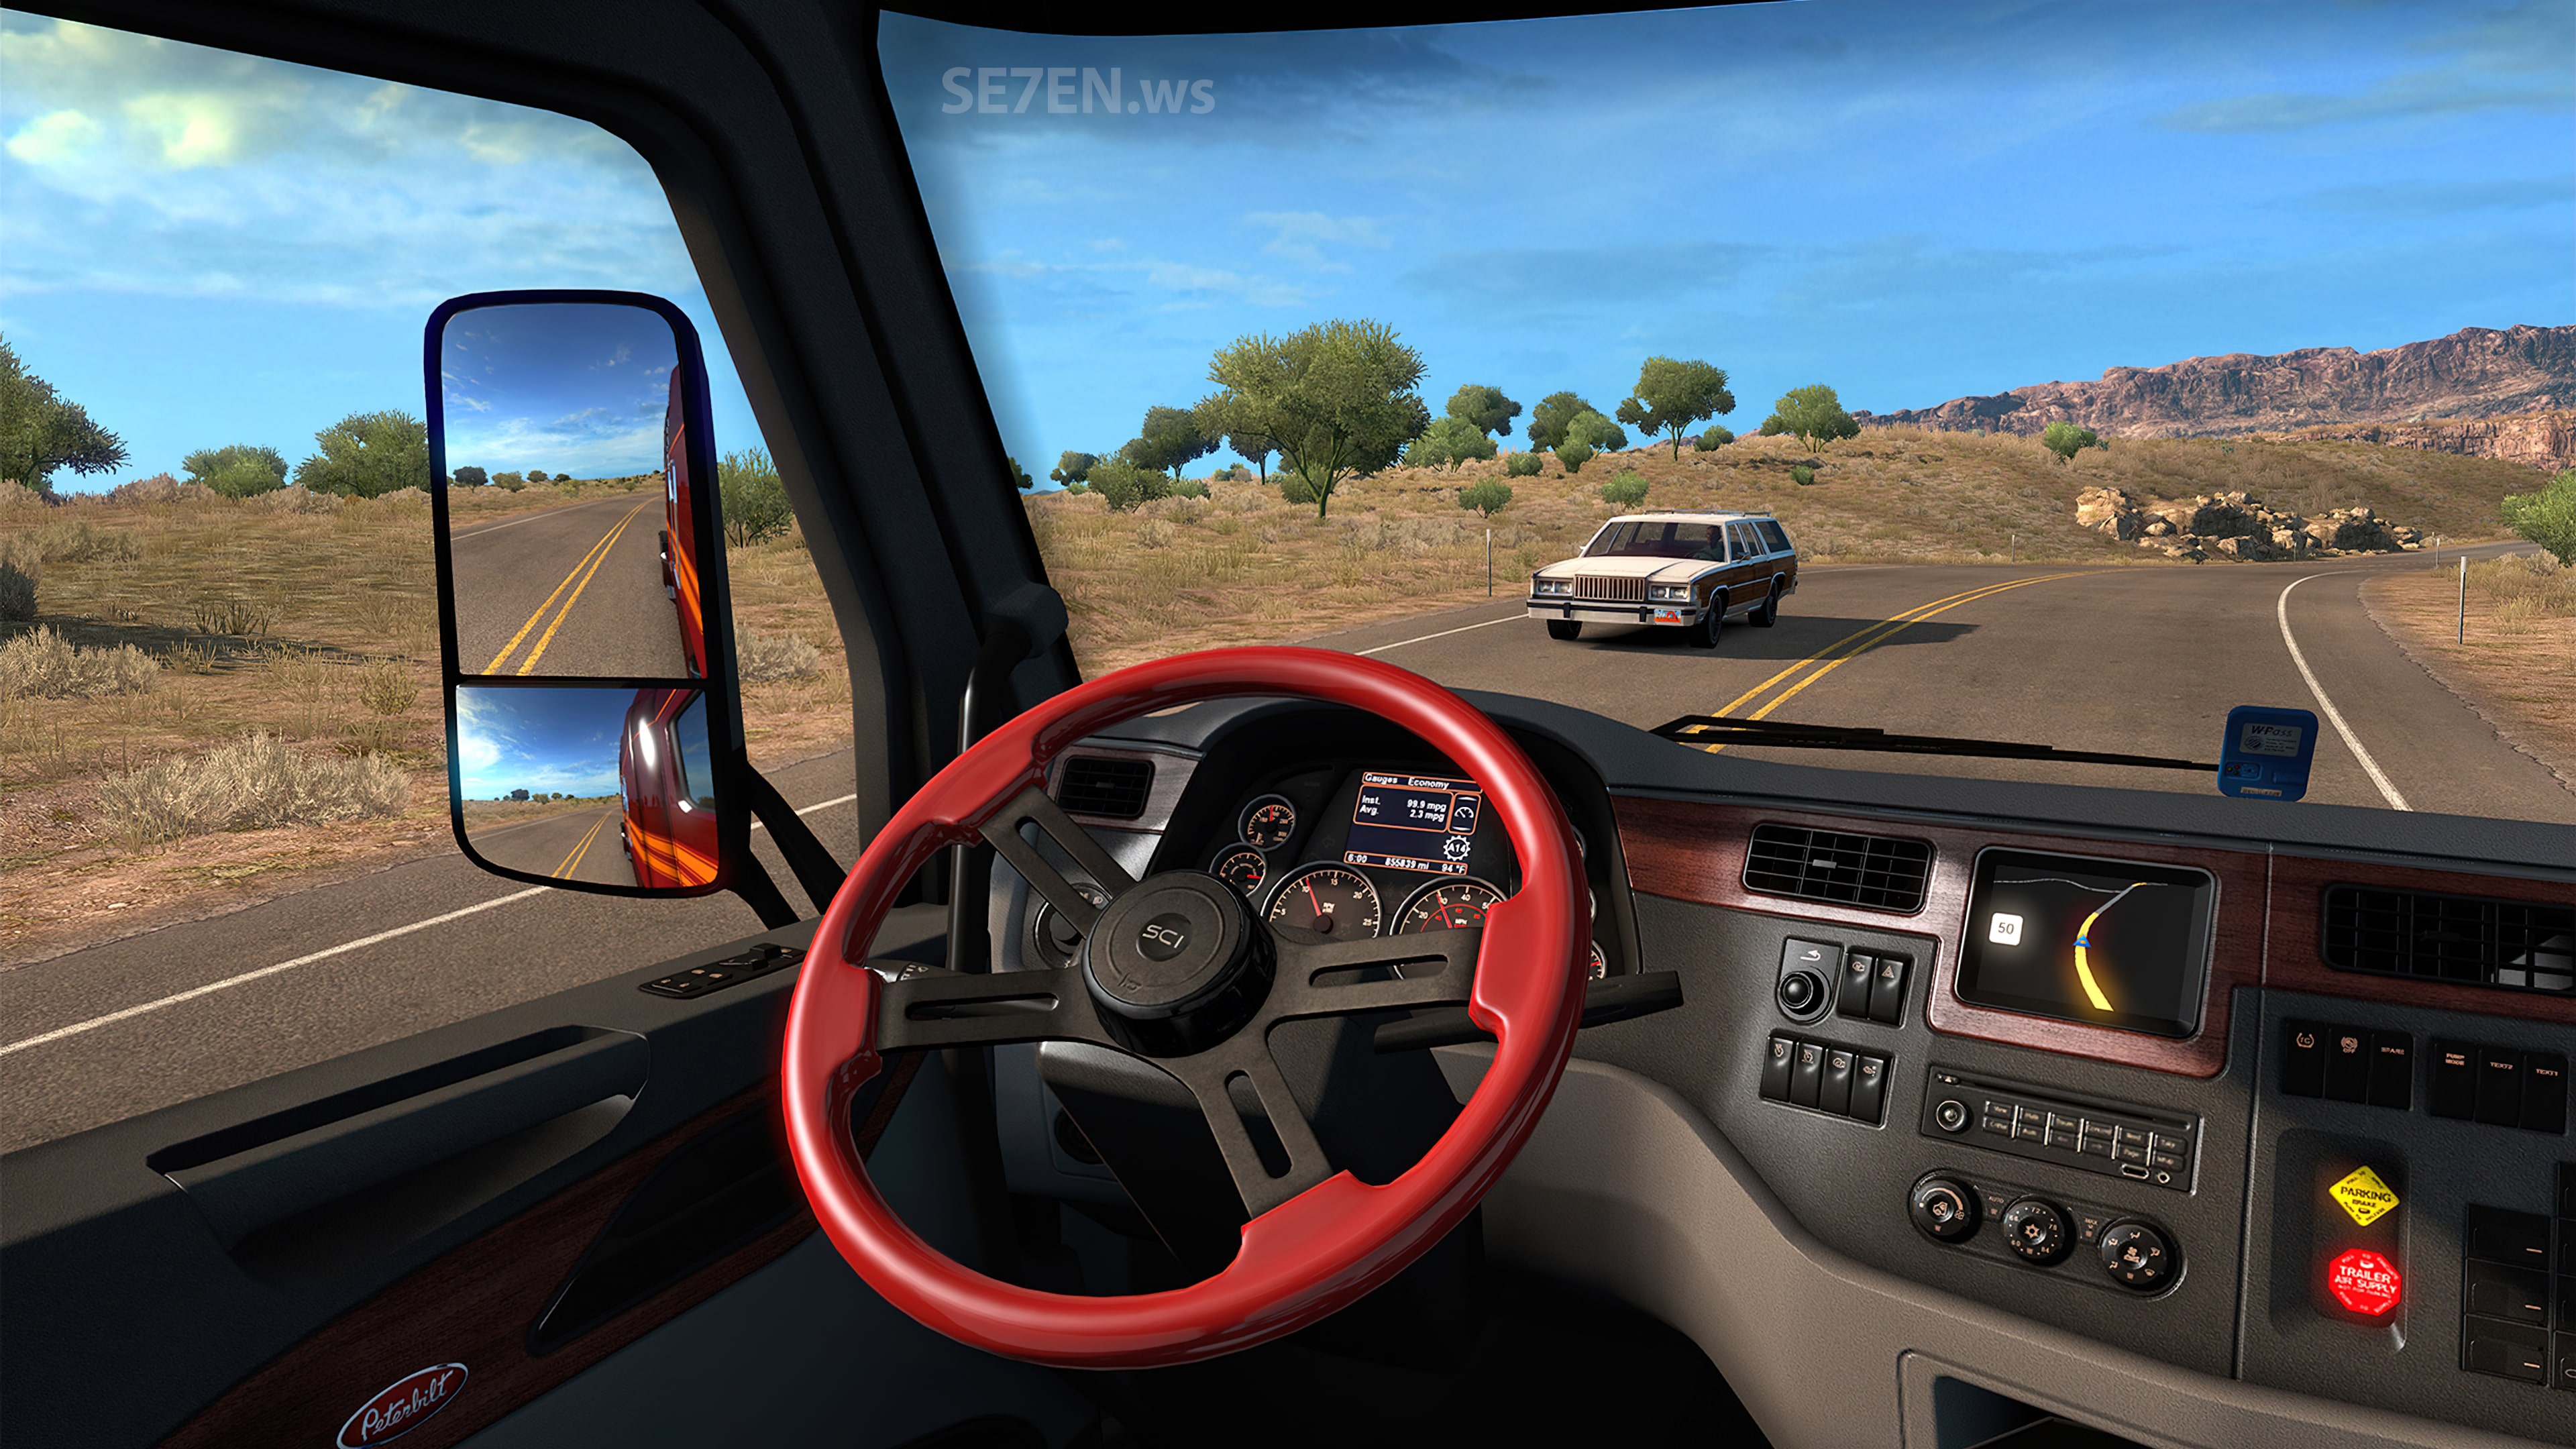 american truck simulator free download full version mac